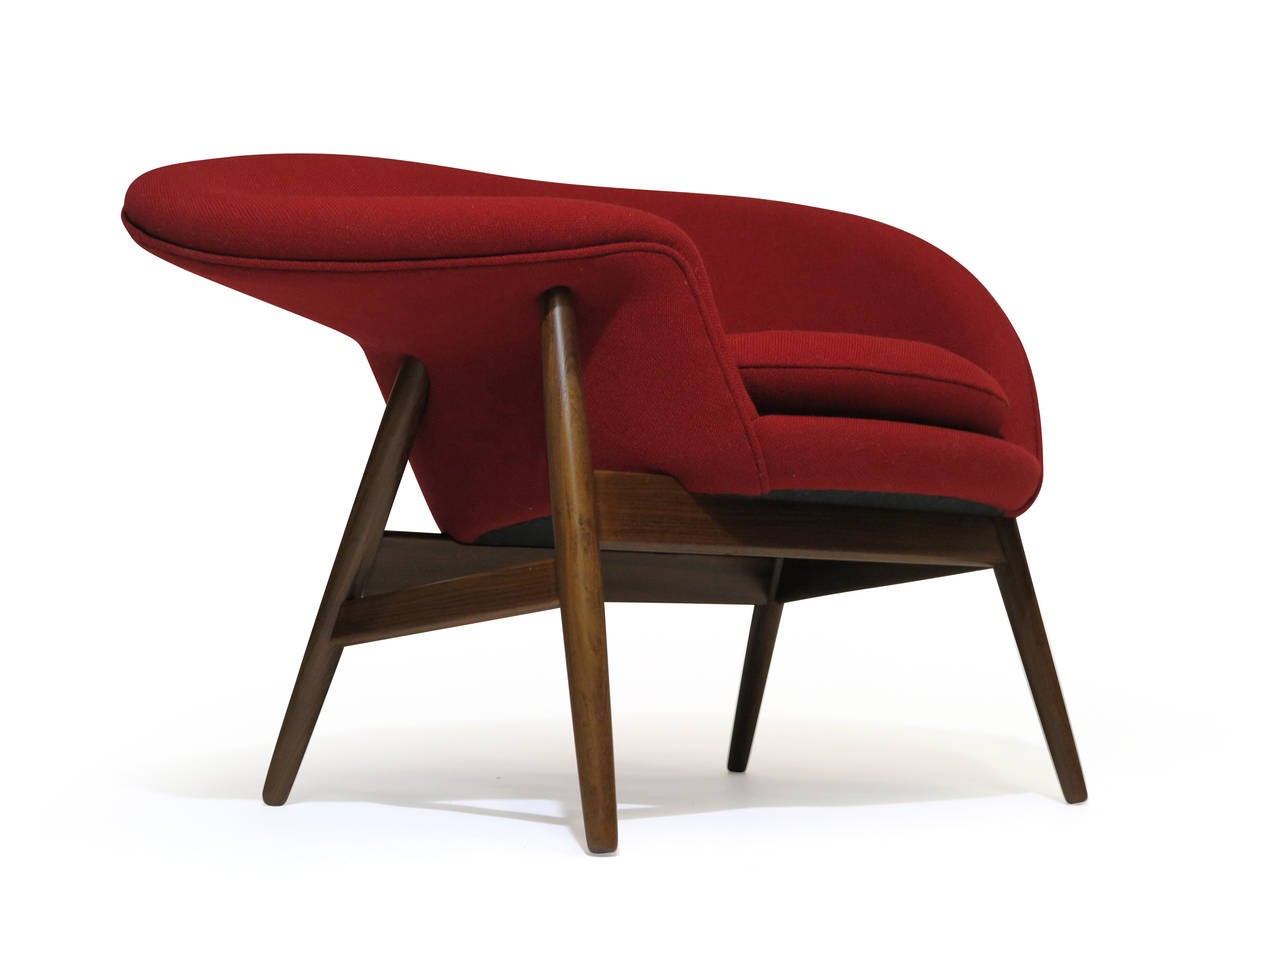 Hans Olsen model #3437 Danish lounge chair manufactured by Verner Birksholm c.1956. Finely upholstered in Kvadrat red wool.